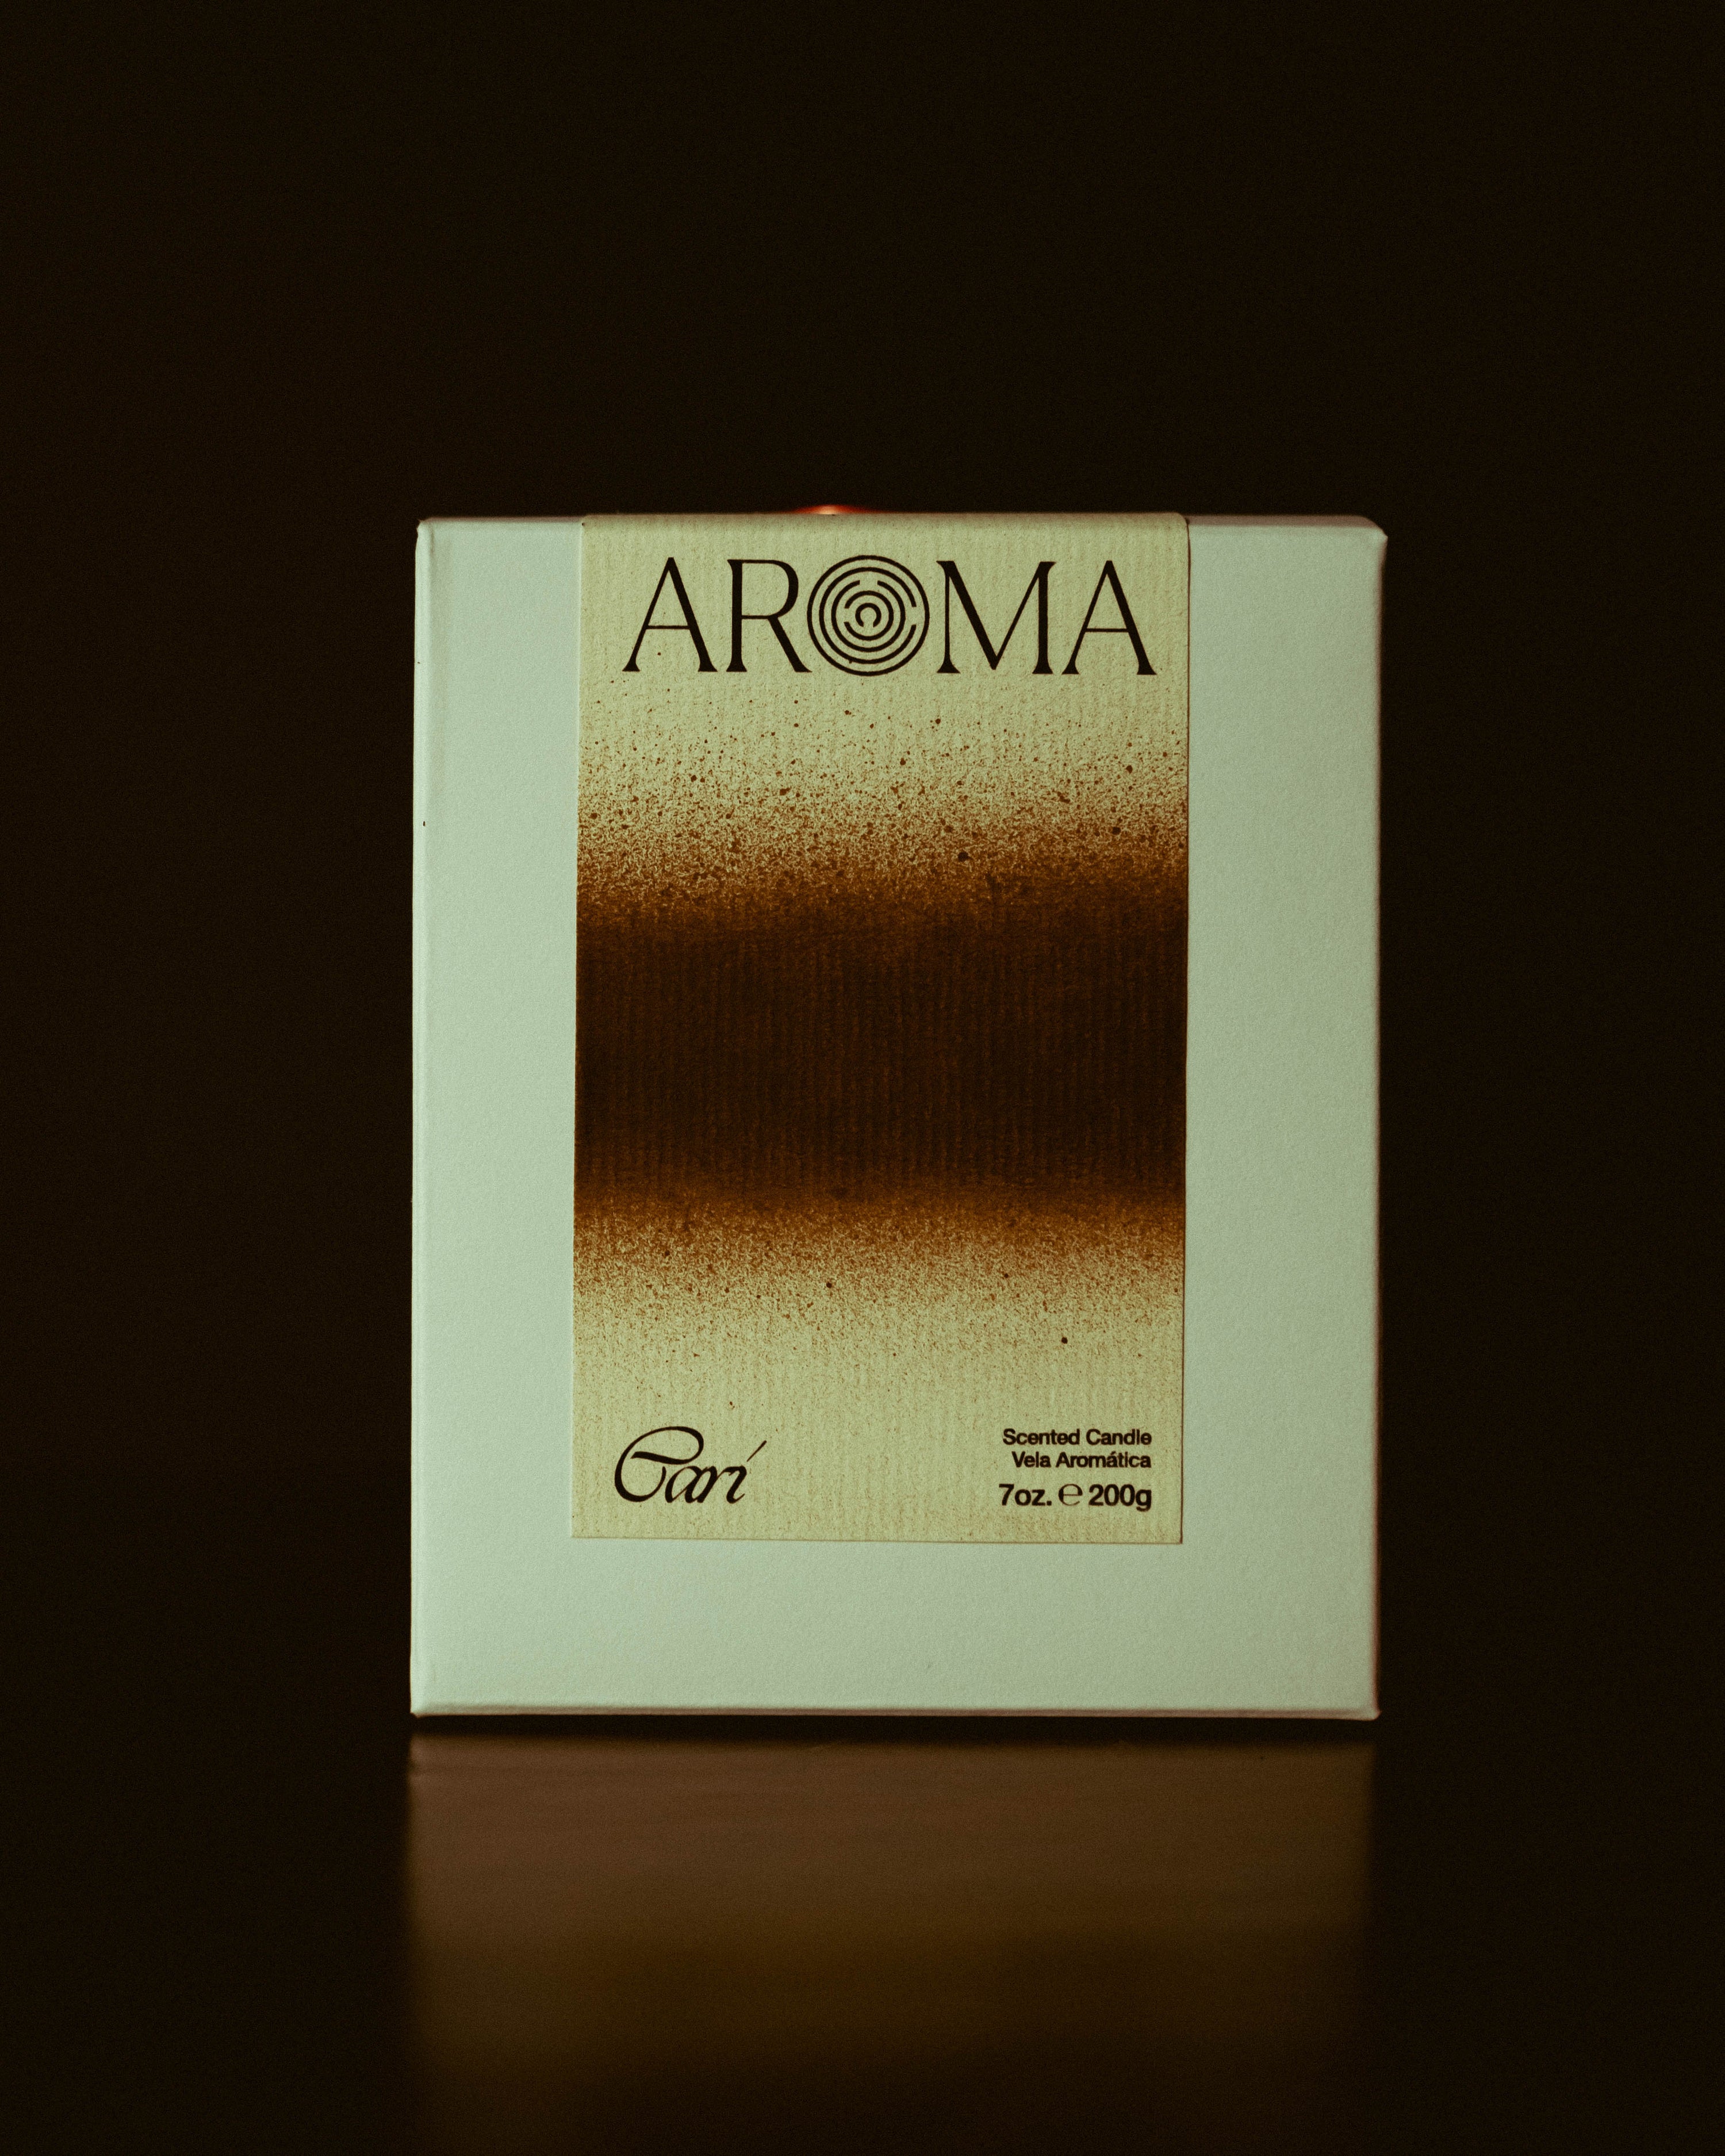 Cari (AROMA Label)